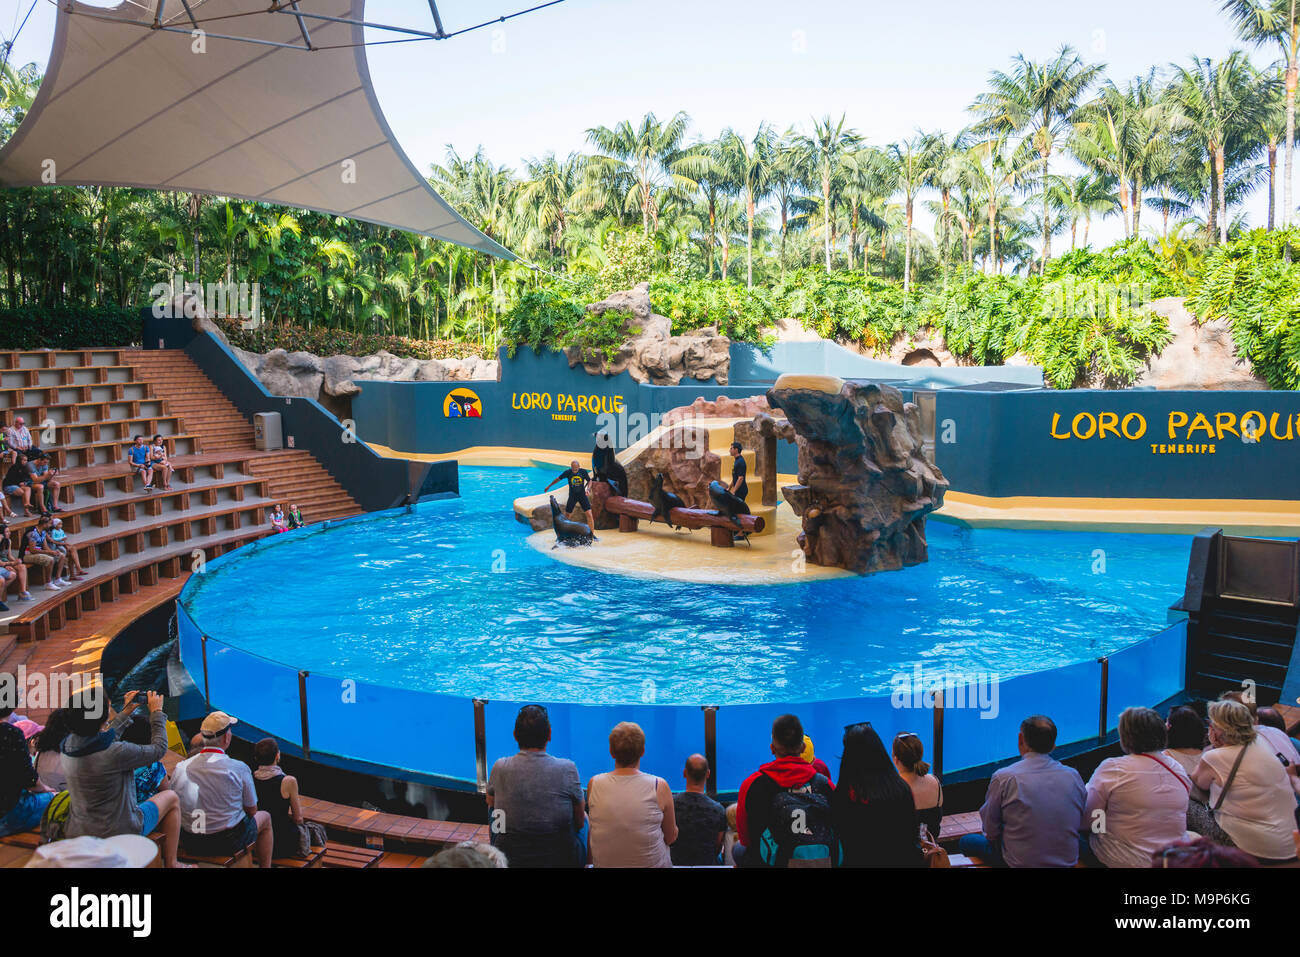 Show with sea lions, Loro Parque, Puerto de la Cruz, Tenerife, Canary Islands, Spain Stock Photo